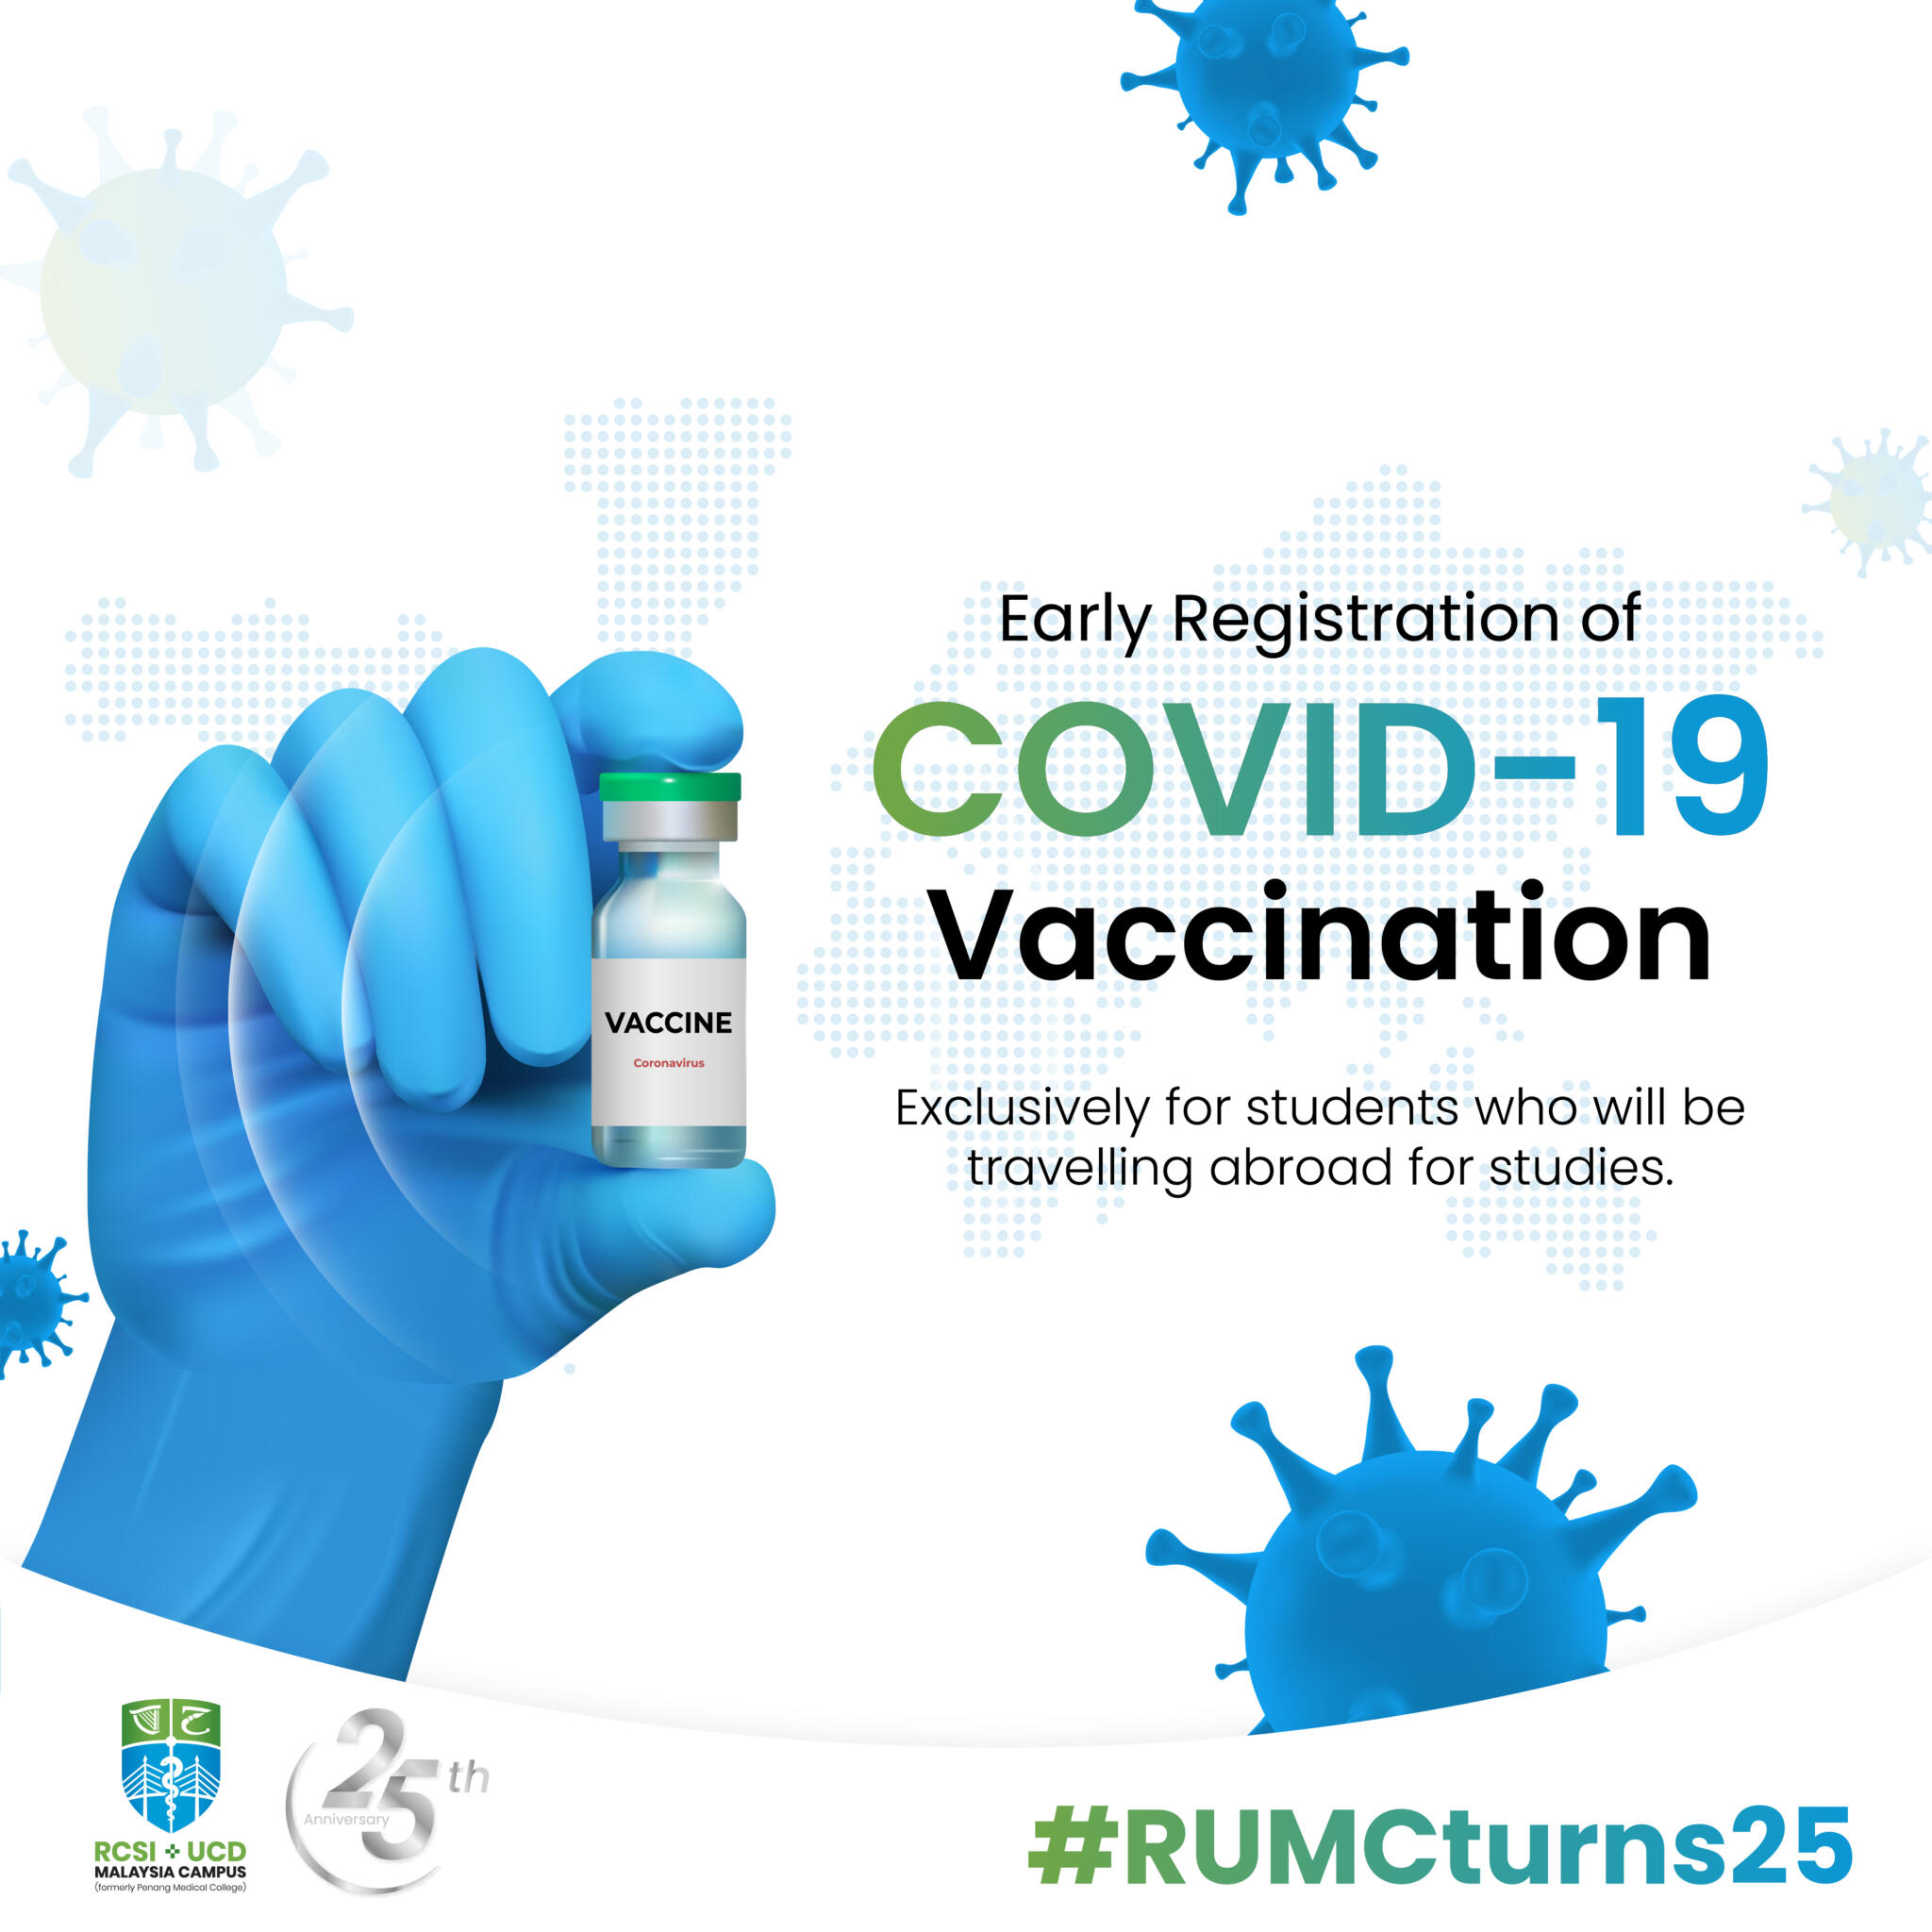 Covid-19 vaccine malaysia registration